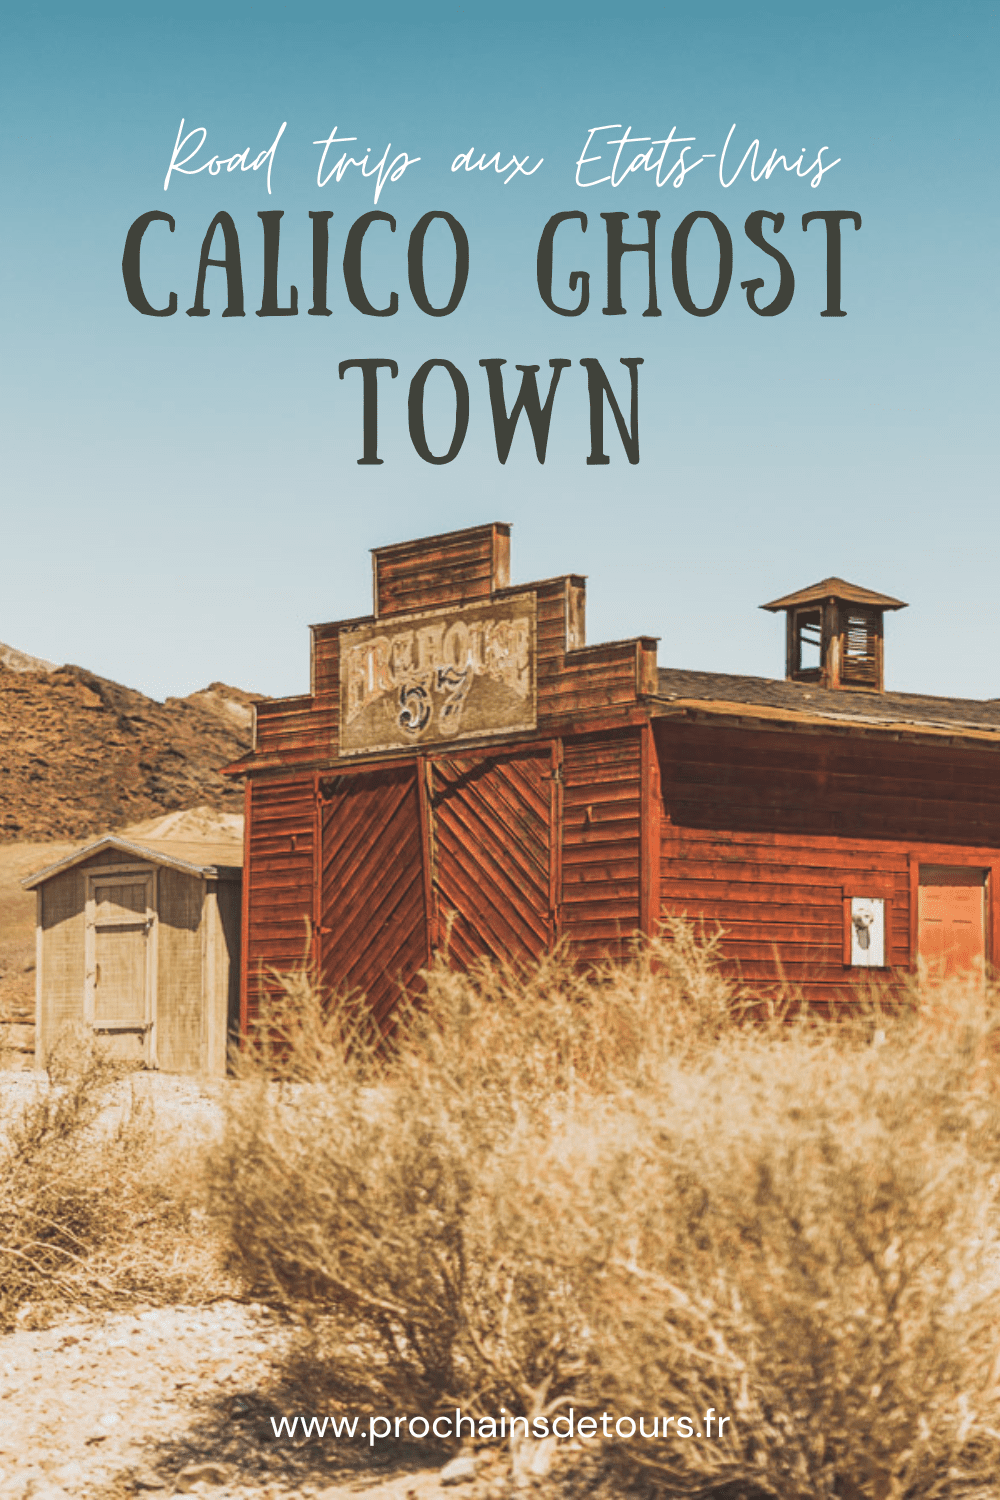 Bienvenue à Calico Ghost Town du comté de San Bernardino, en Californie. Autrefois une ville minière animée des années 1800, Calico a été préservée pour recréer l'aspect et l'ambiance du Far West. Remontez dans le temps et explorez Calico, la ville de la "ruée vers l'argent". Des saloons, des structures historiques, des boutiques, des restaurants et des manèges, Calico offre une expérience dépaysante et éducative pour toute la famille lors d'un road trip dans l'ouest américain ou un voyage.